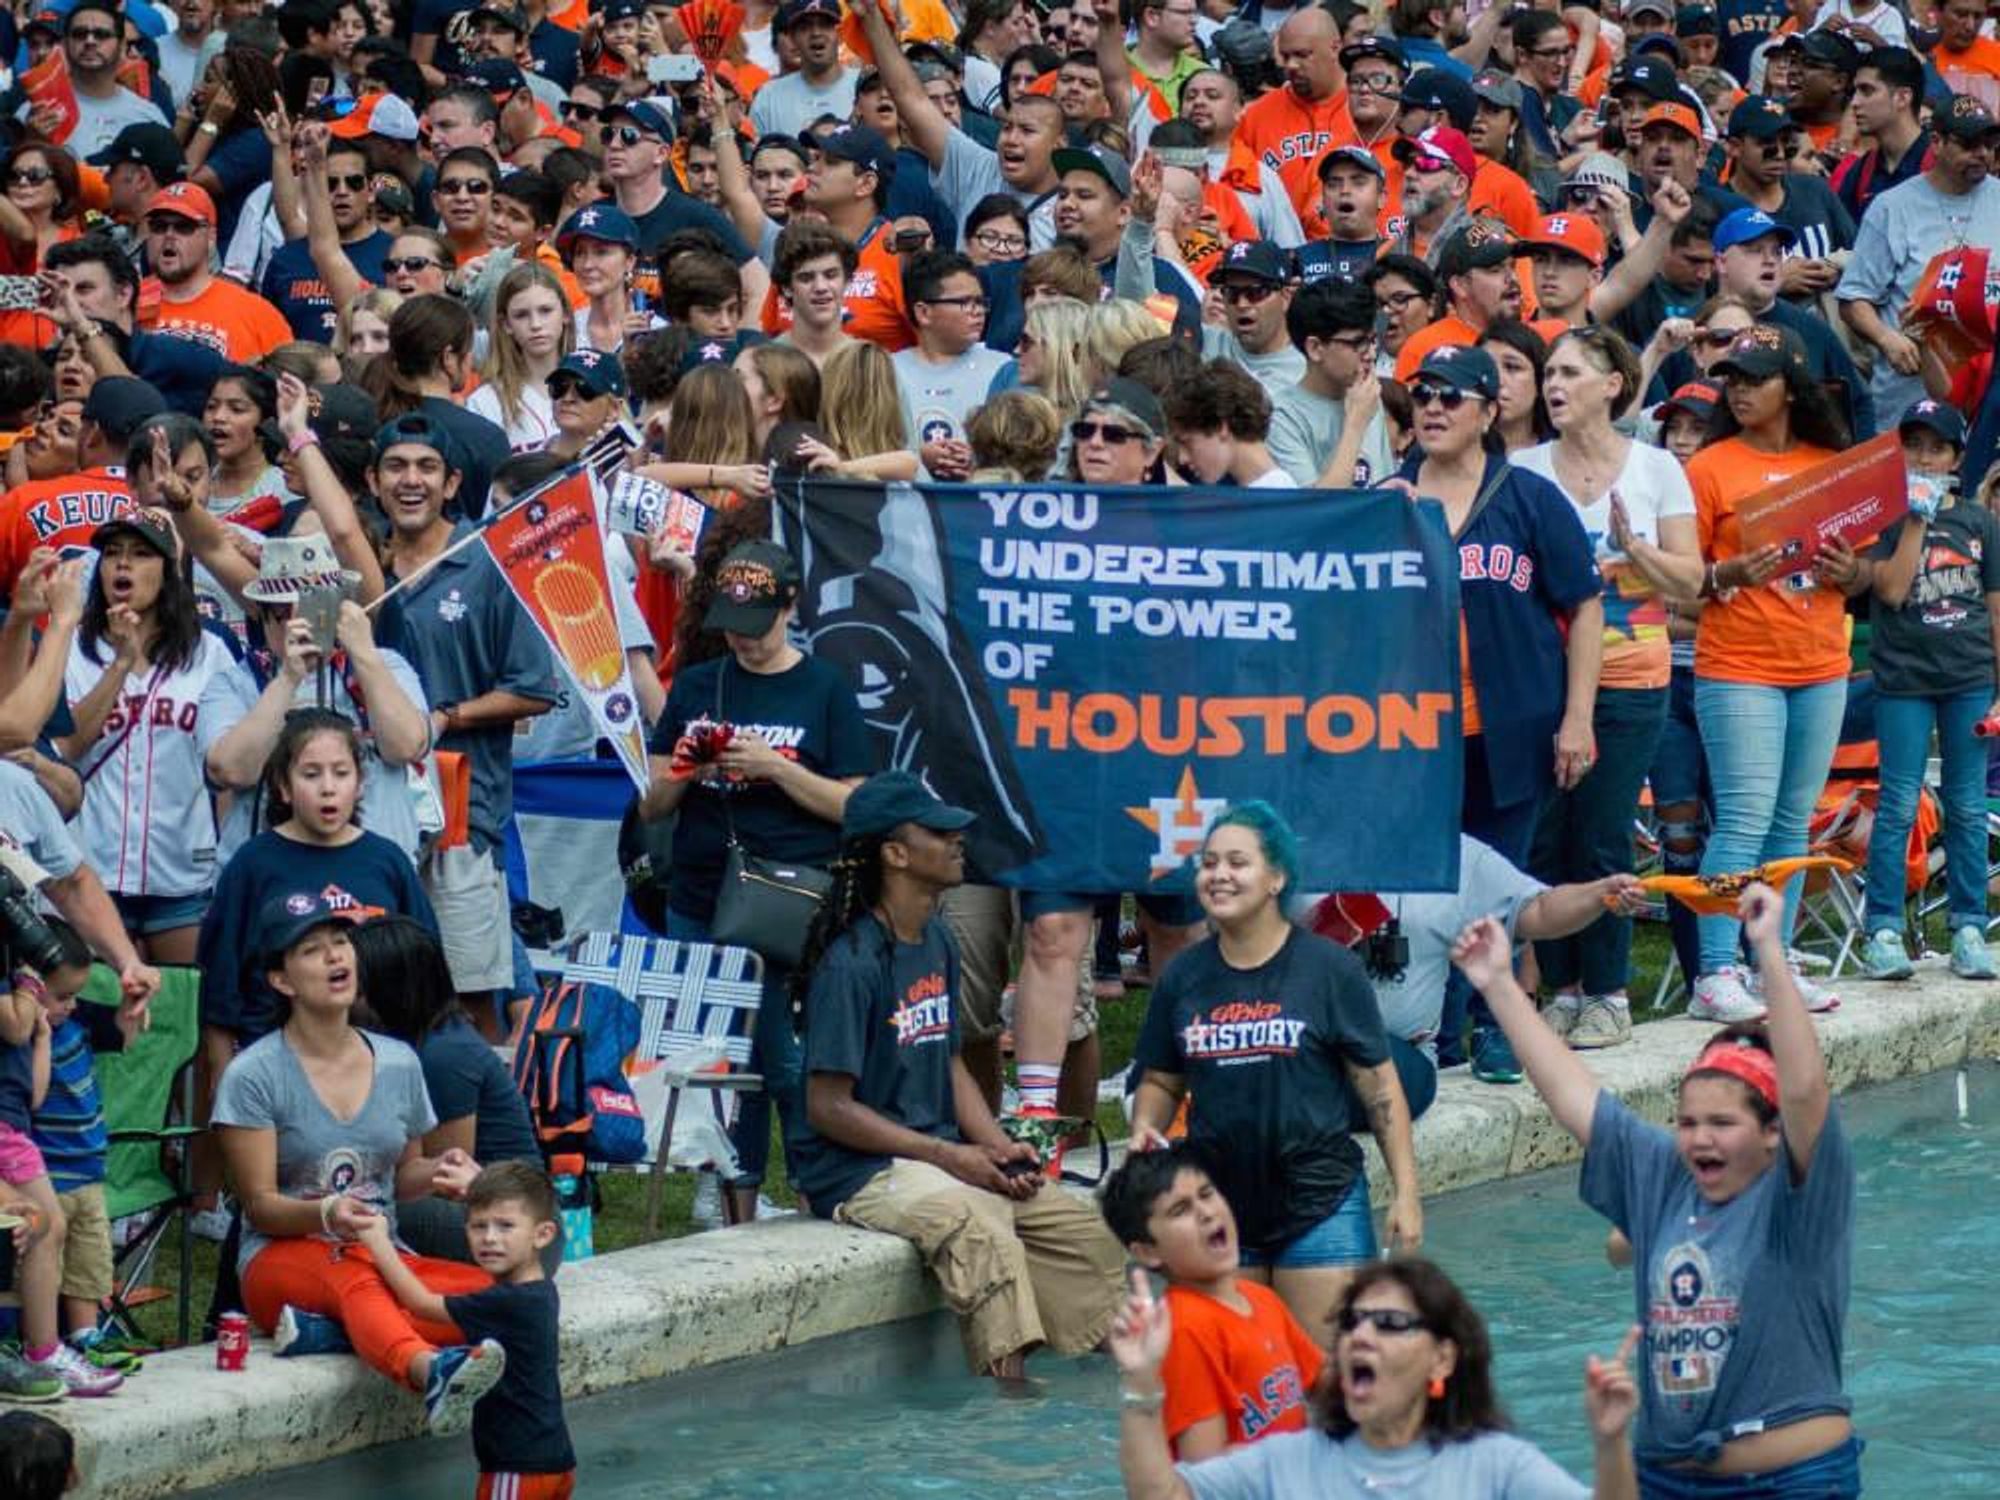 Ken Hoffman rallies Houston to shatter the 1 million-attendance